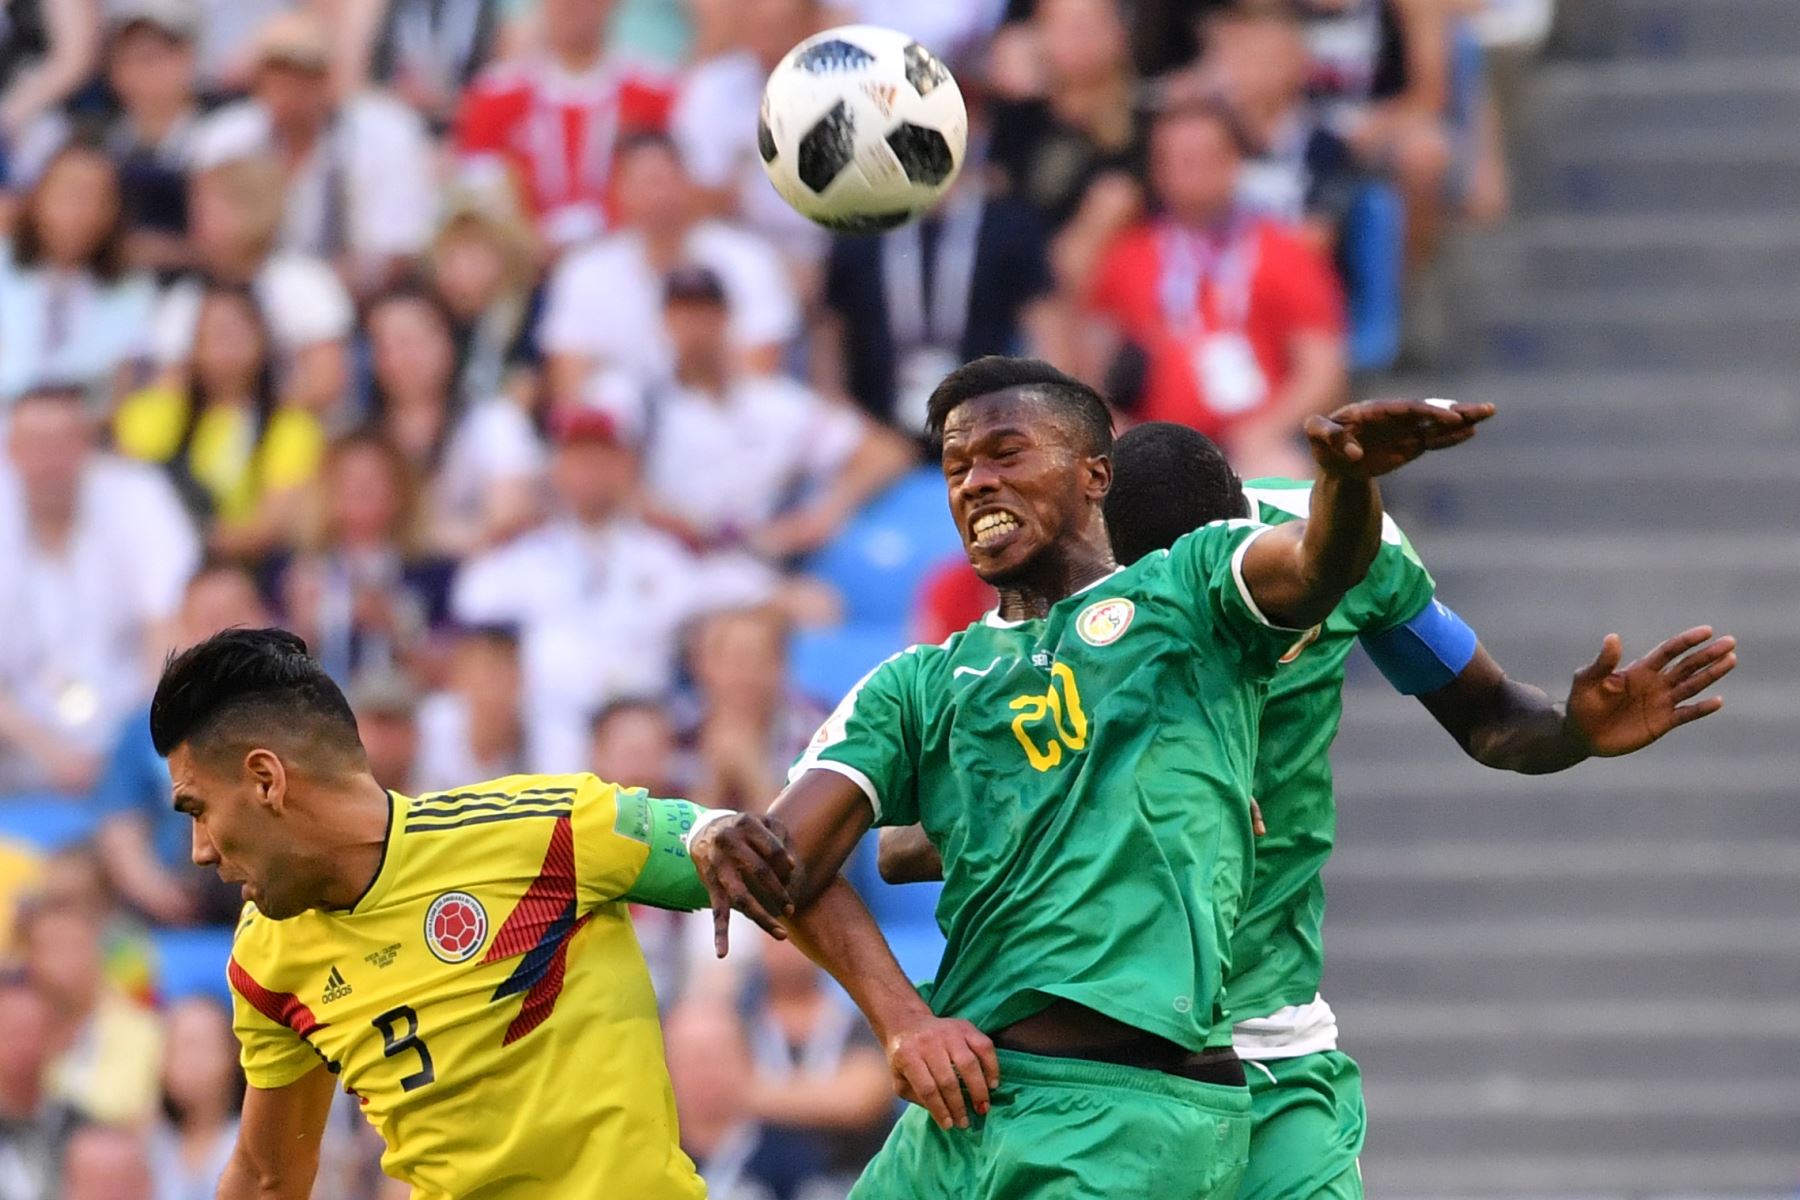 La delantera de Senegal Keita Balde (R) encabeza el partido con el delantero colombiano Falcao durante el partido de fútbol del Grupo H Rusia 2018 entre Senegal y Colombia en el Samara Arena en Samara el 28 de junio de 2018. / AFP